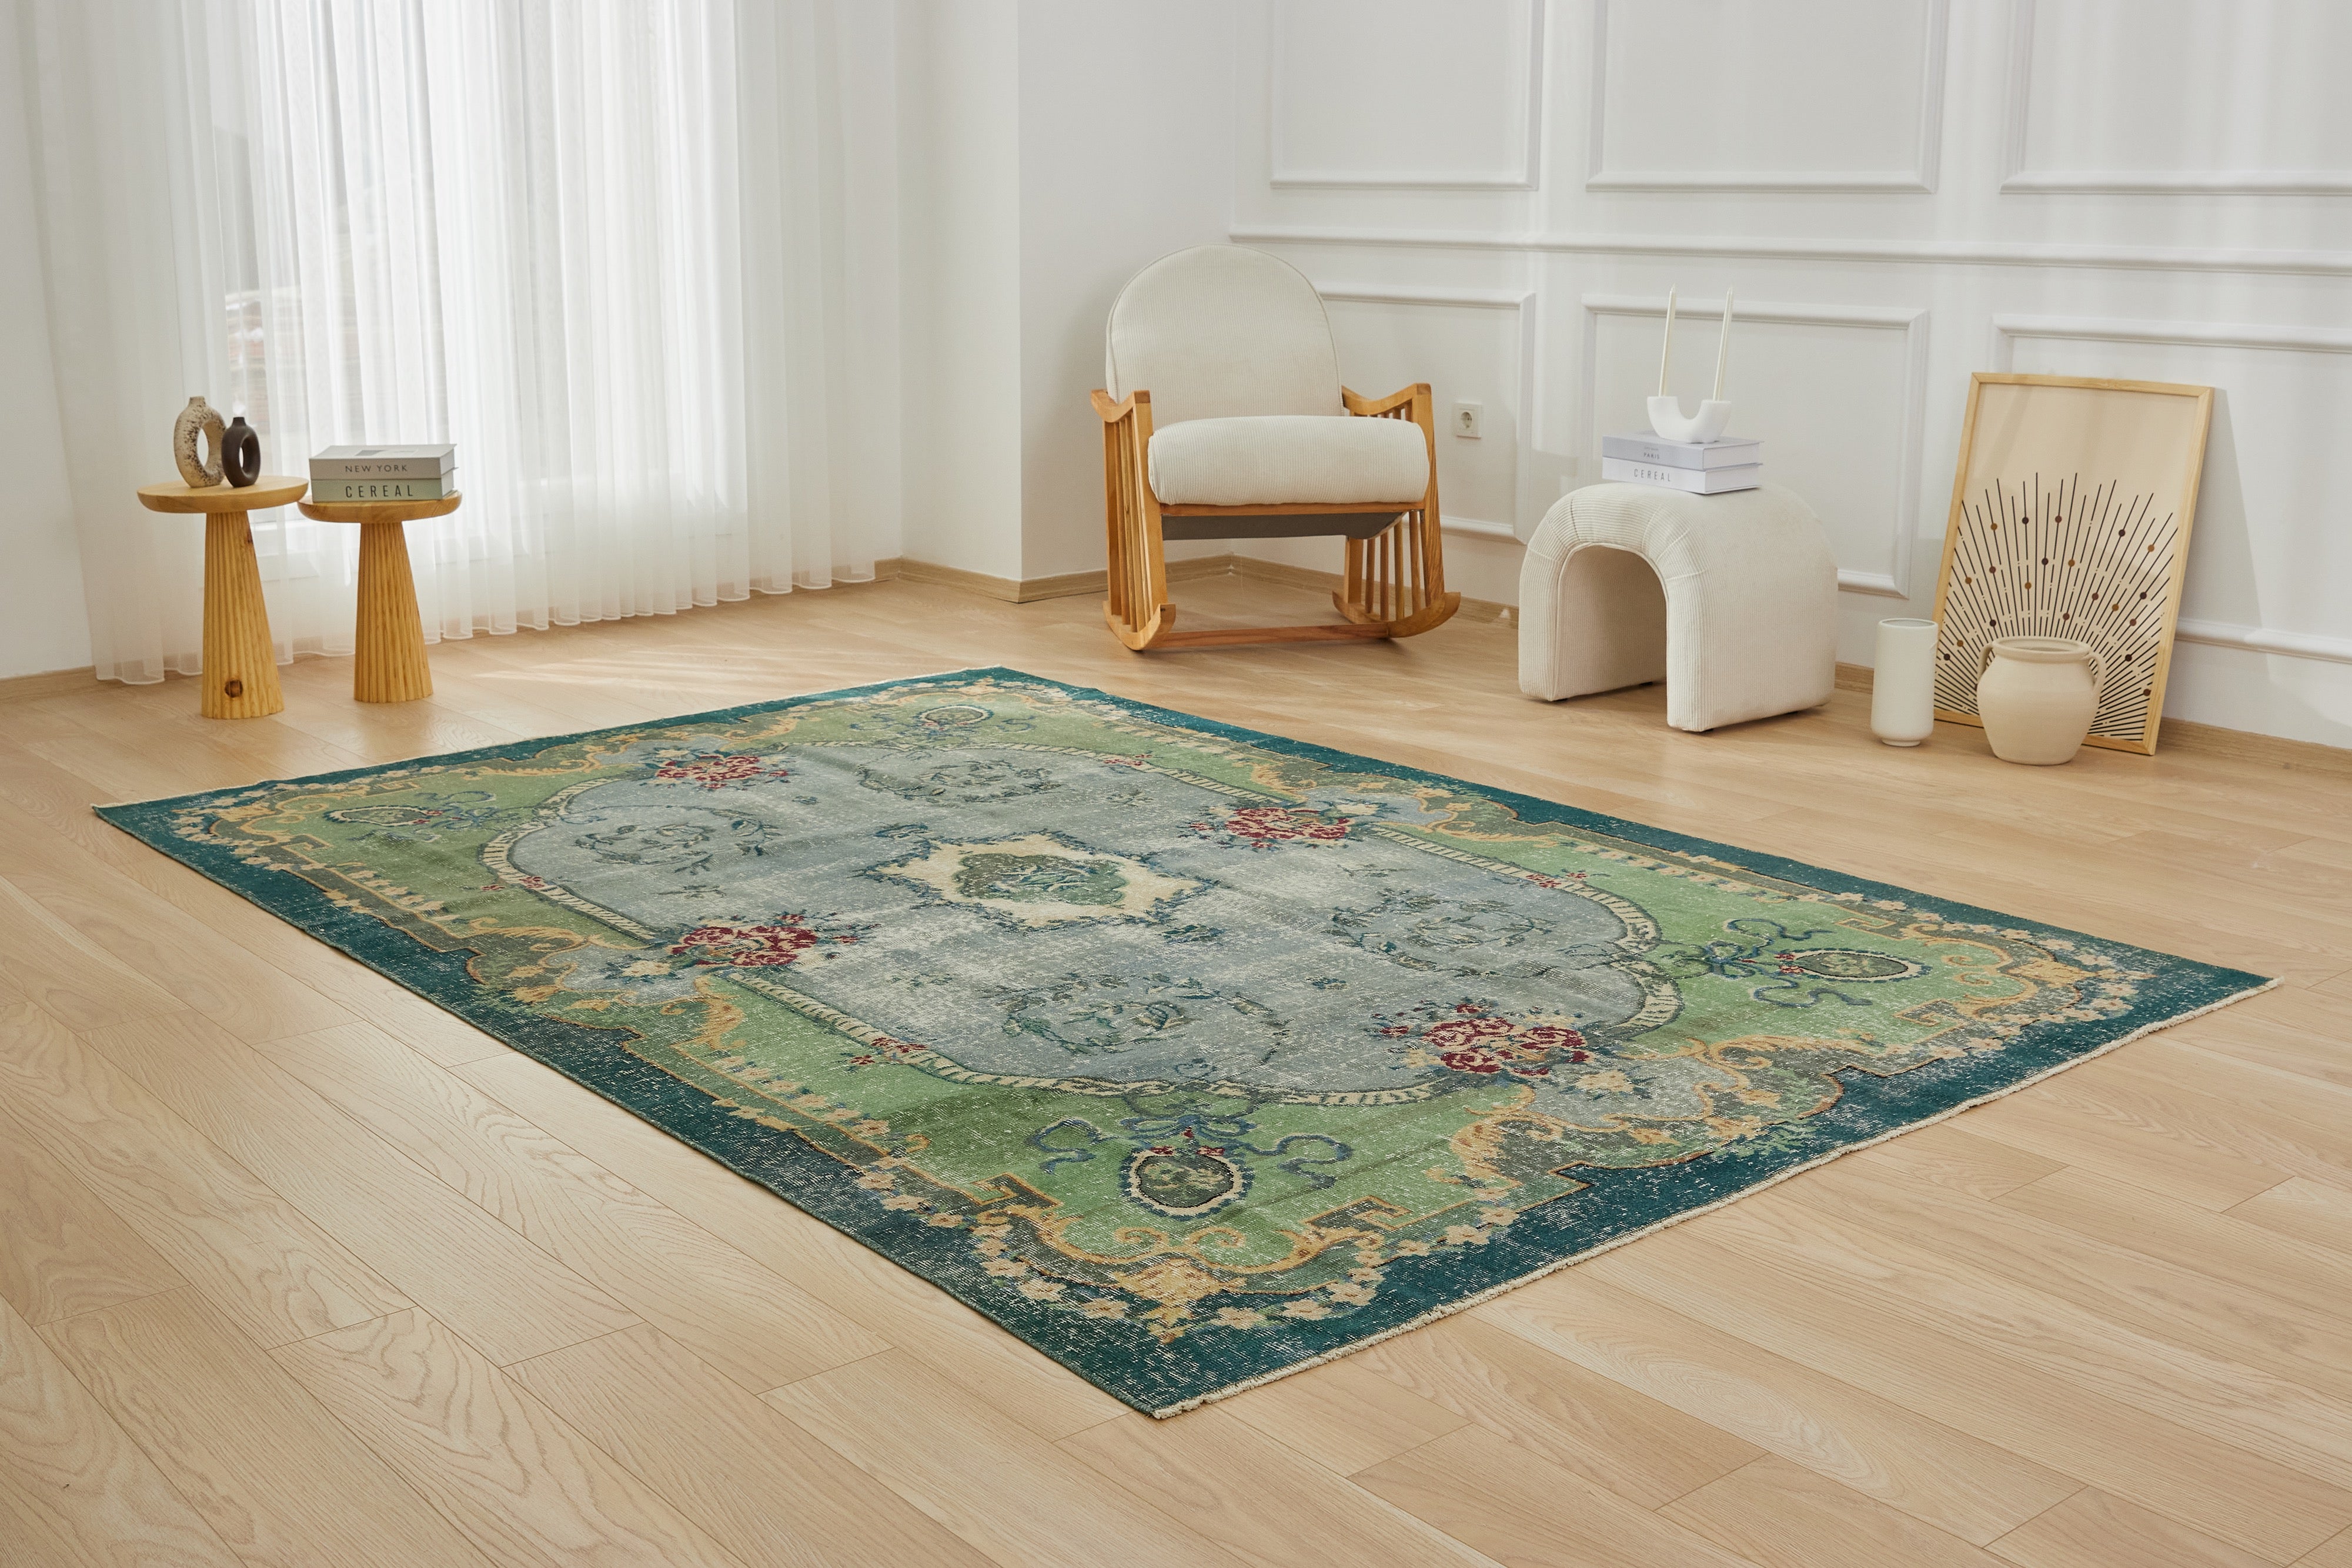 Antique washed Sophistication - Adalind's Professional Carpet Design